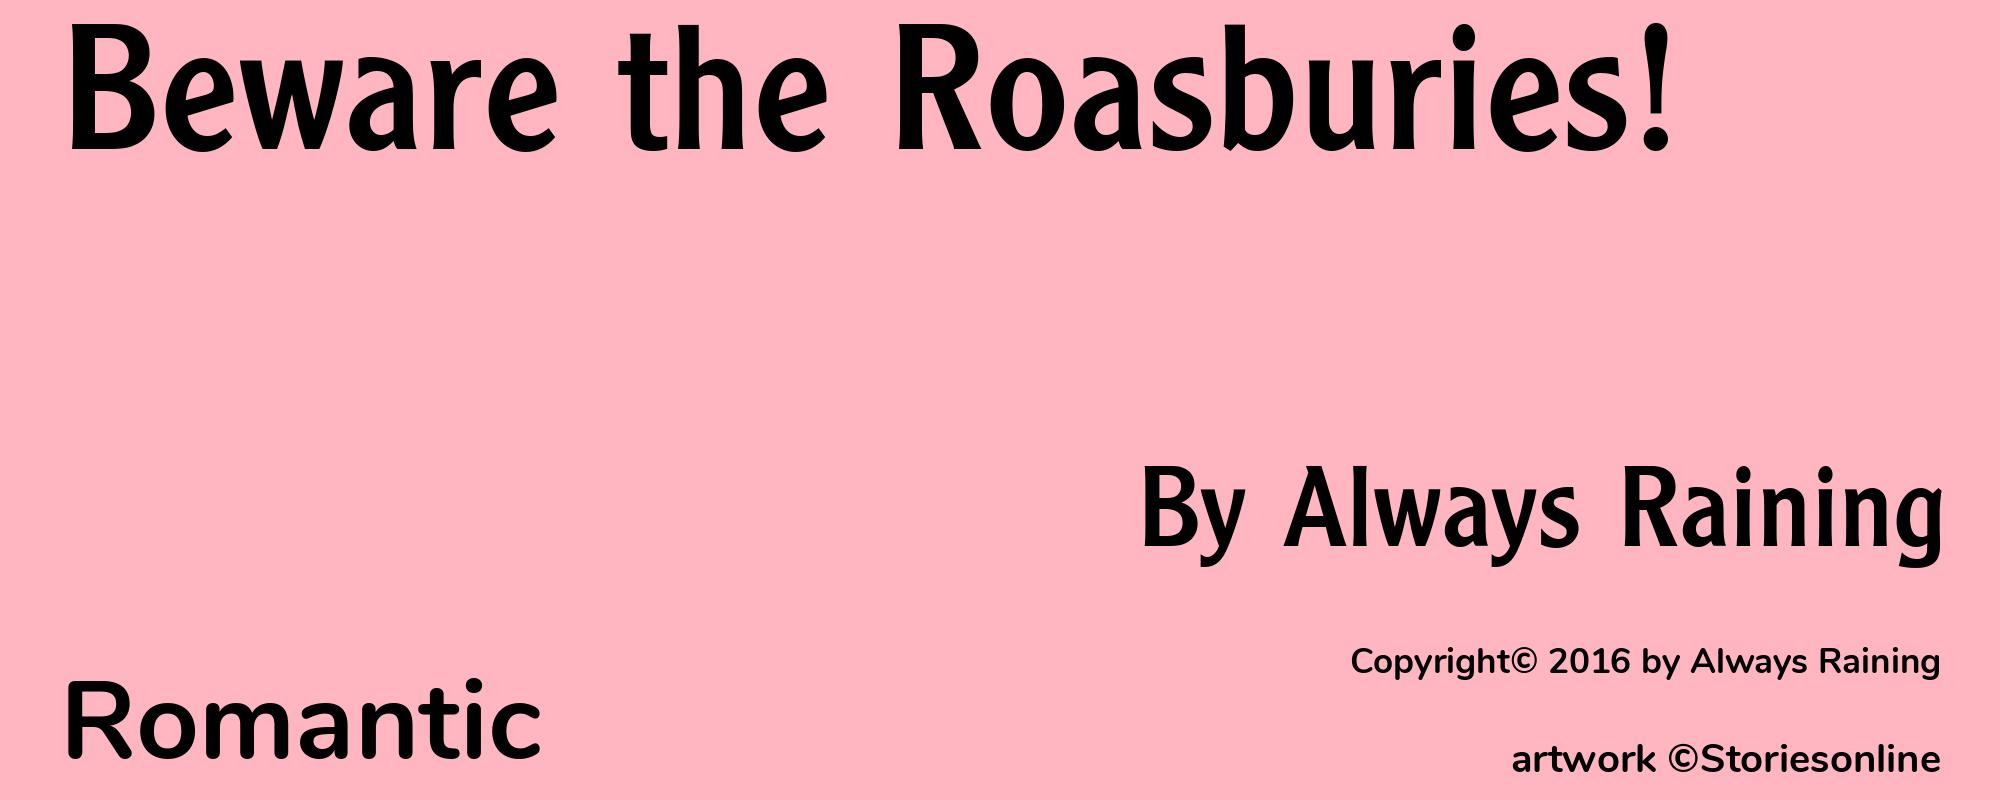 Beware the Roasburies! - Cover